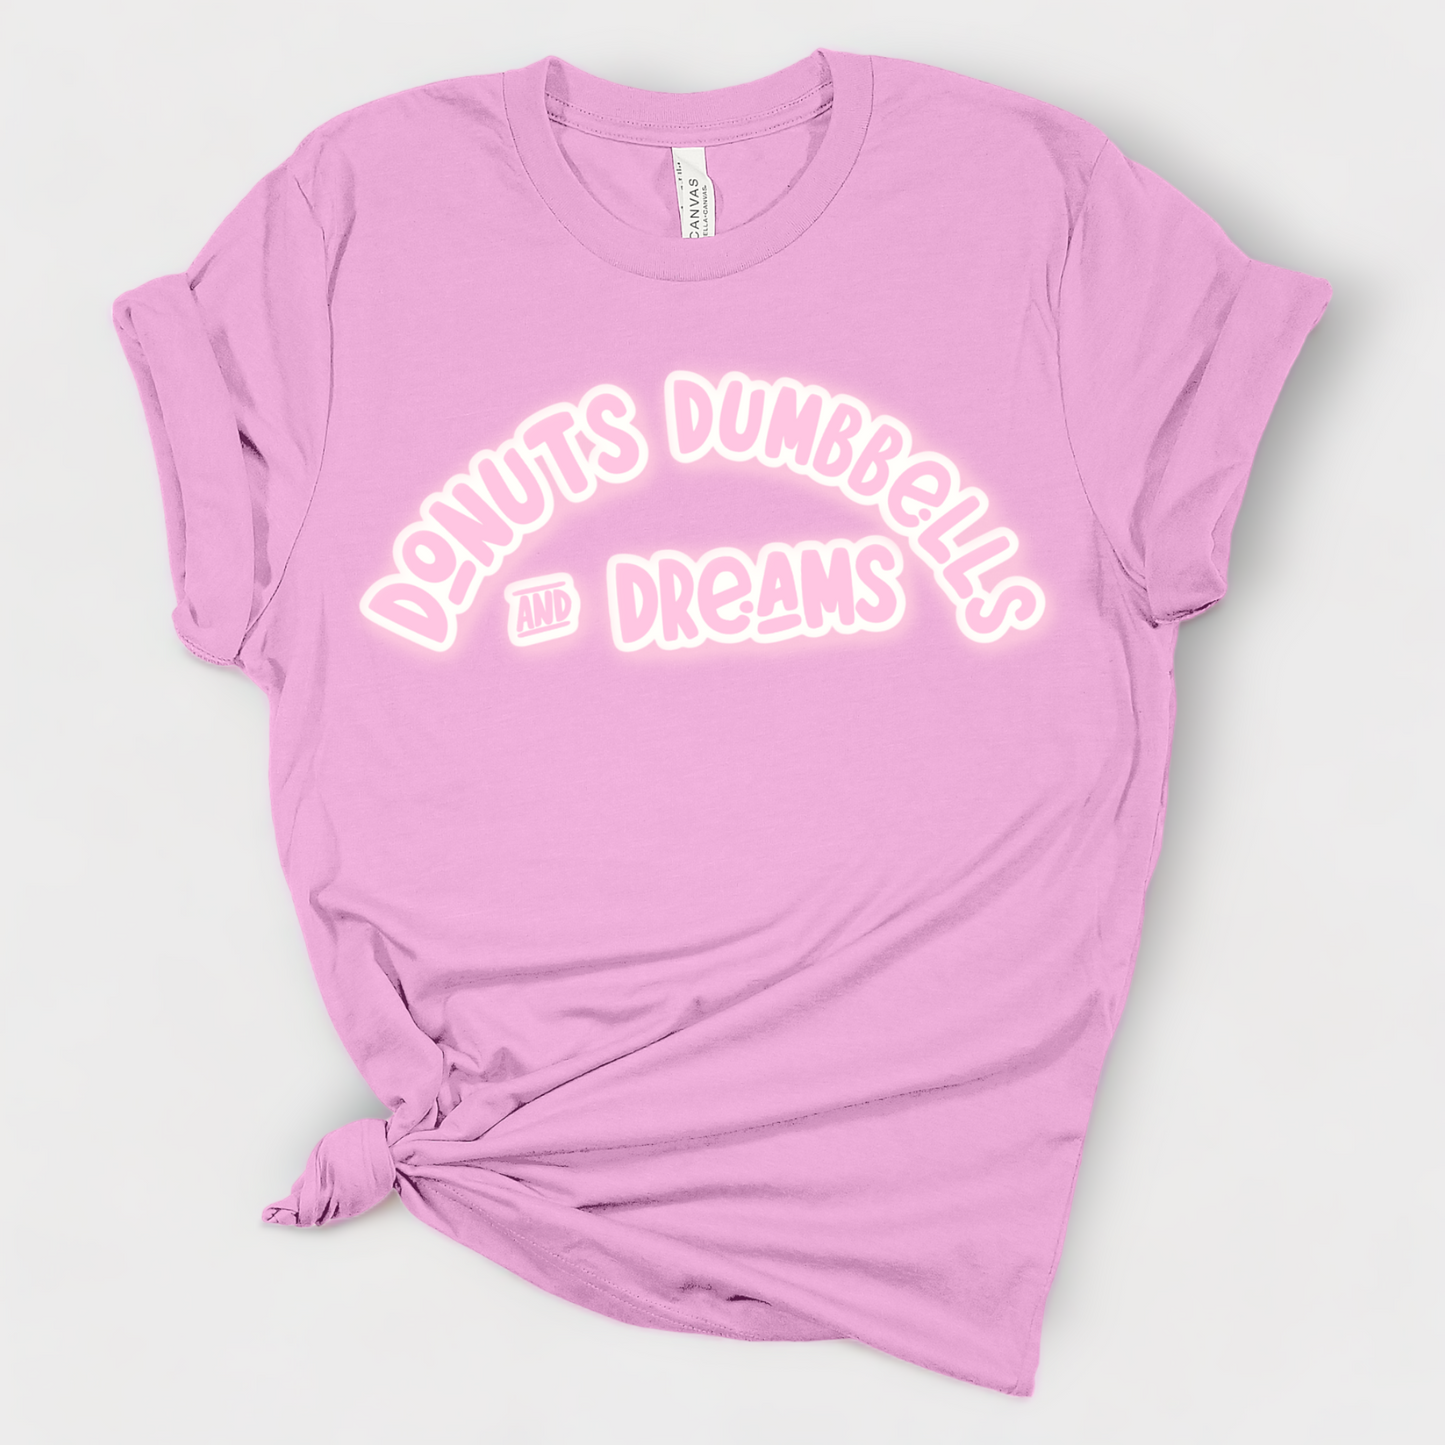 Donuts Dumbbells and Dreams - Short Sleeve Shirt